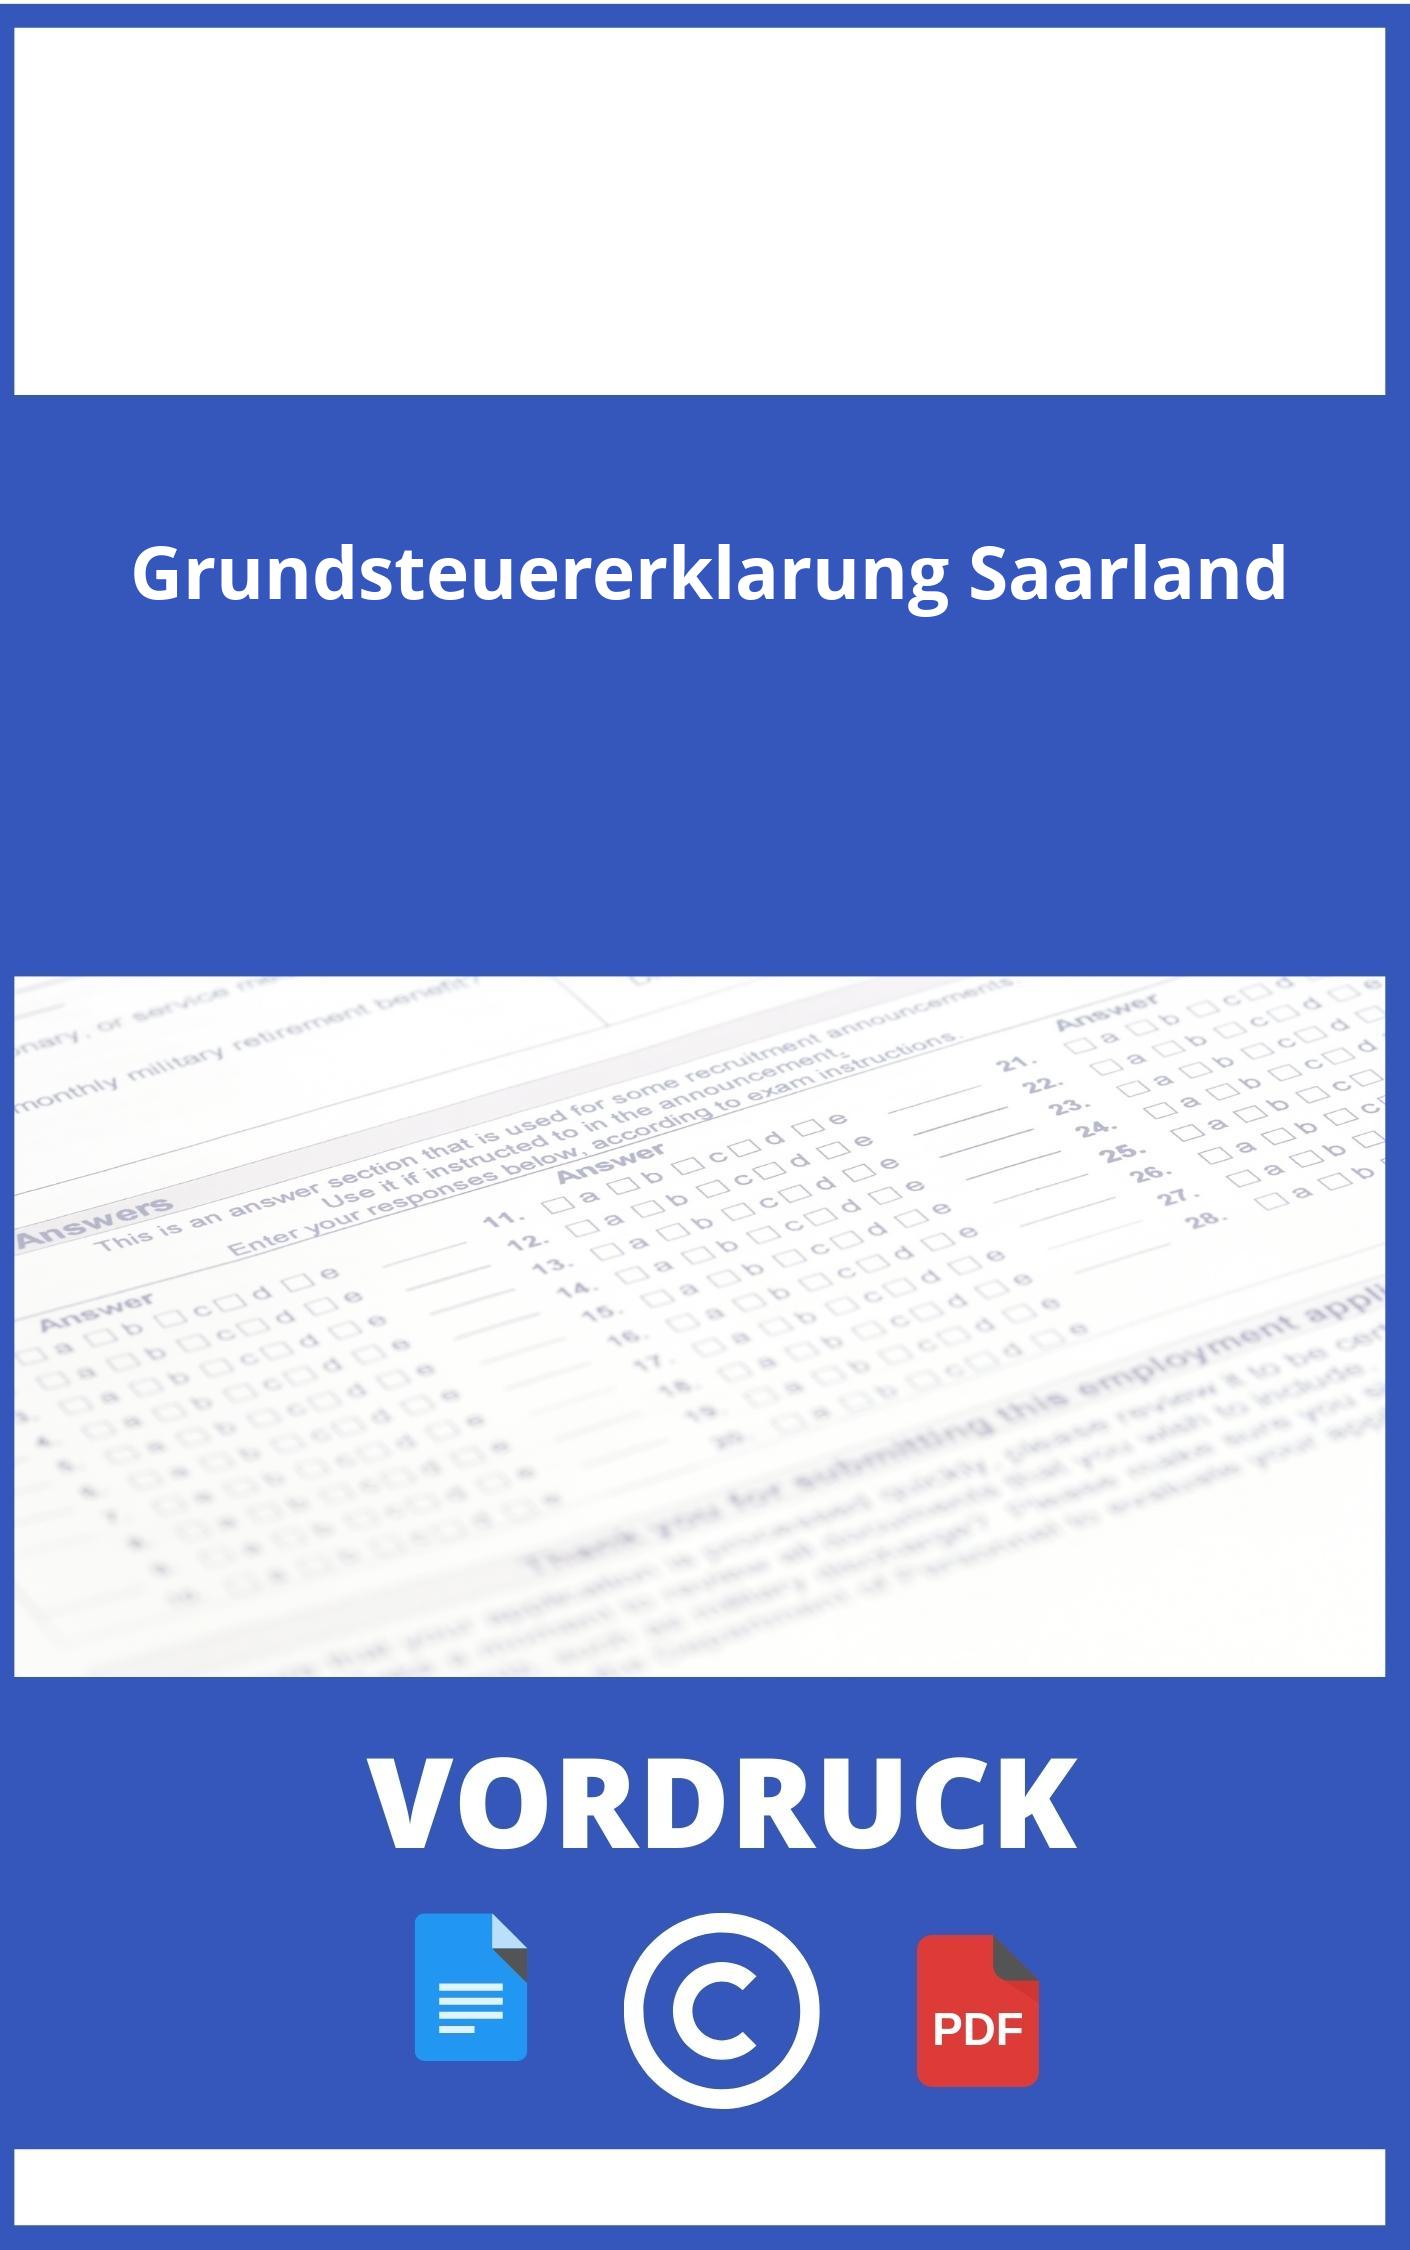 Vordruck Grundsteuererklärung Saarland